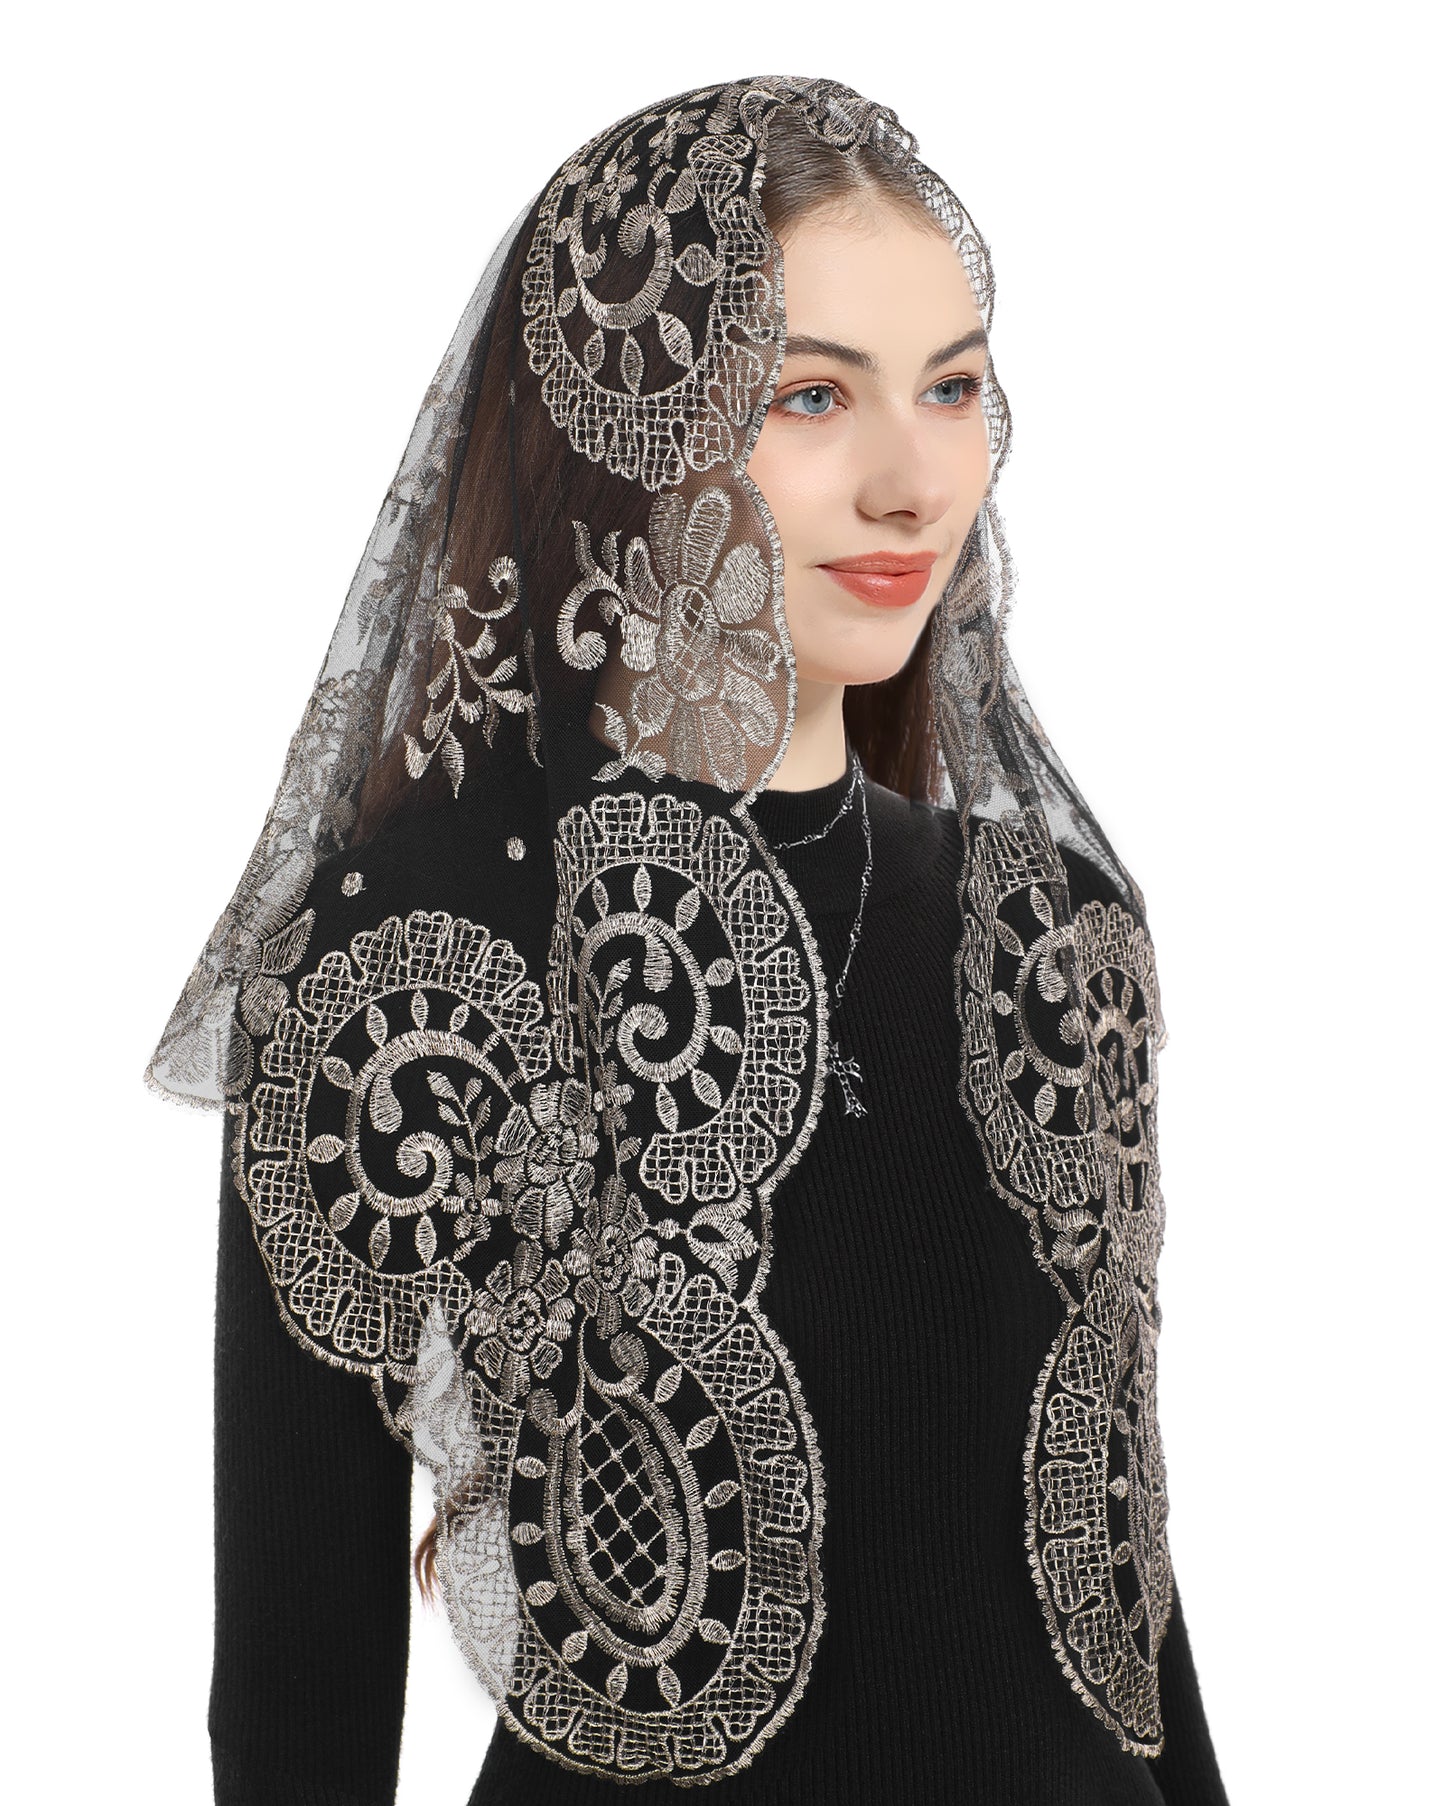 Bozidol Catholic Ladies Lace Veil - Our Lady of Camellia Sheer Catholic Ladies Triangle Lace Veil